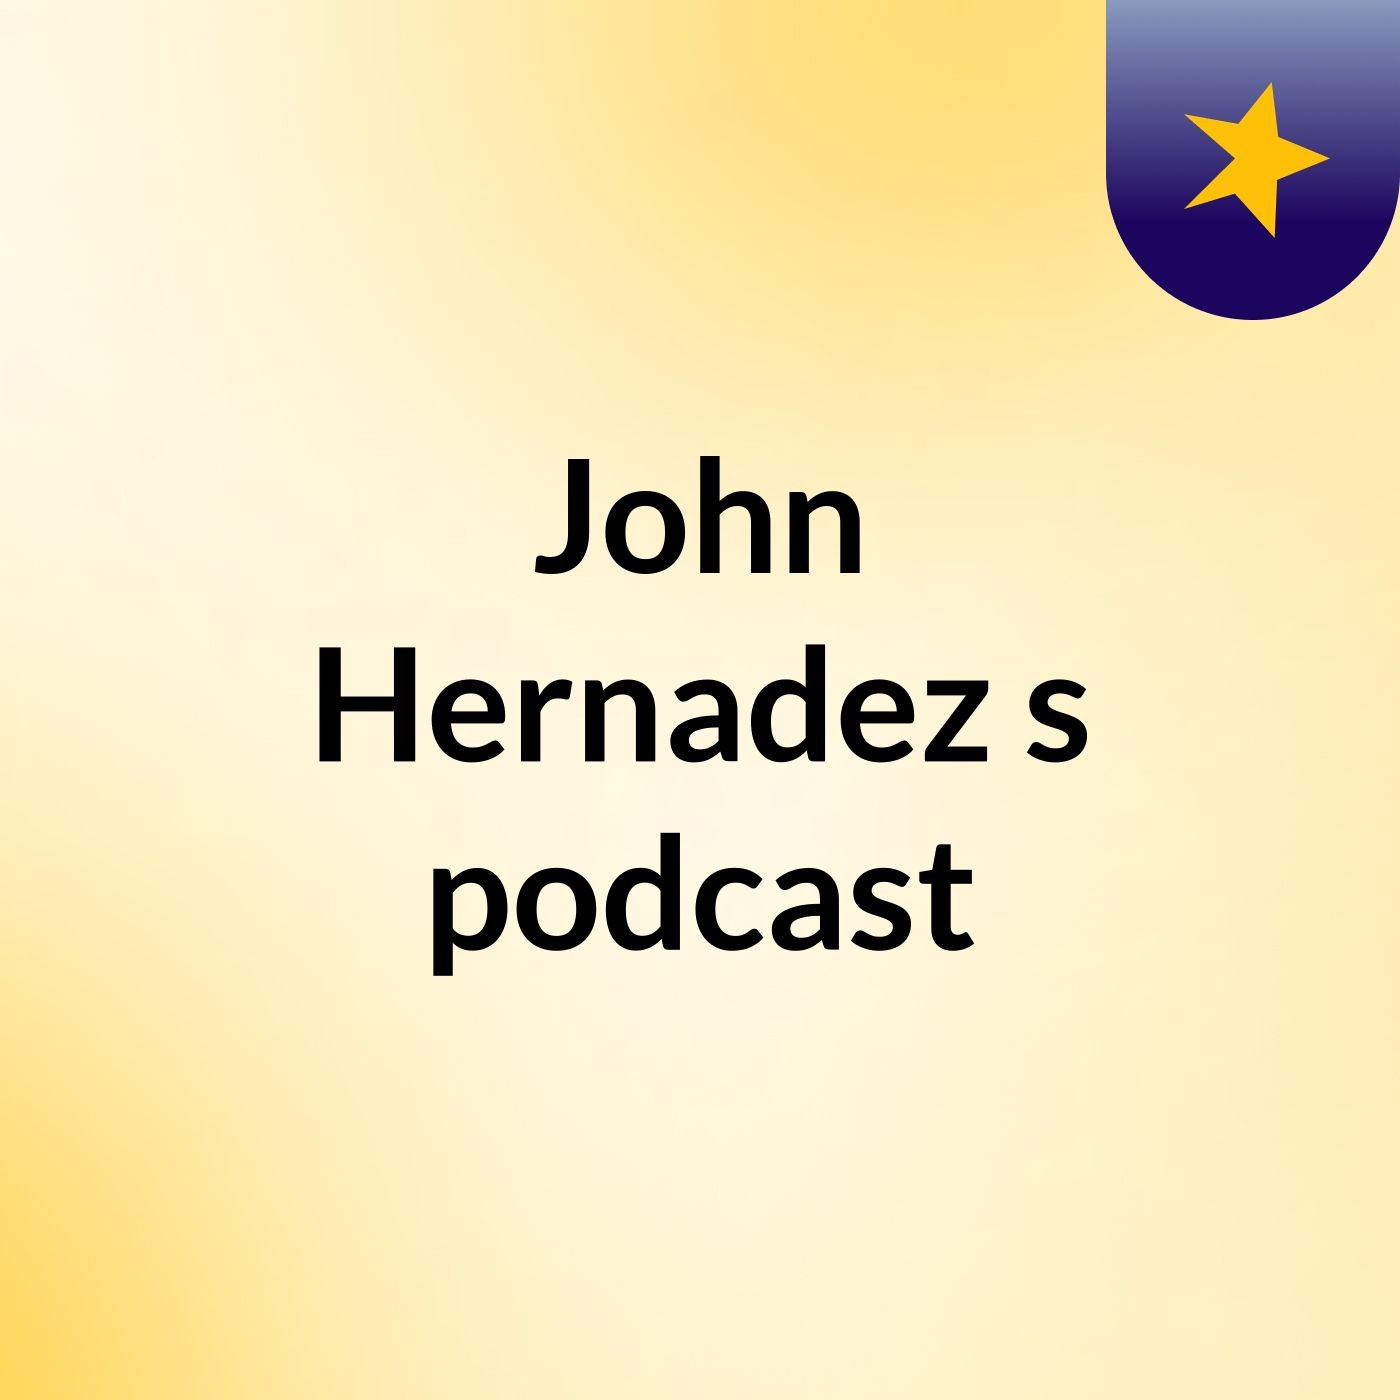 John Hernadez's podcast